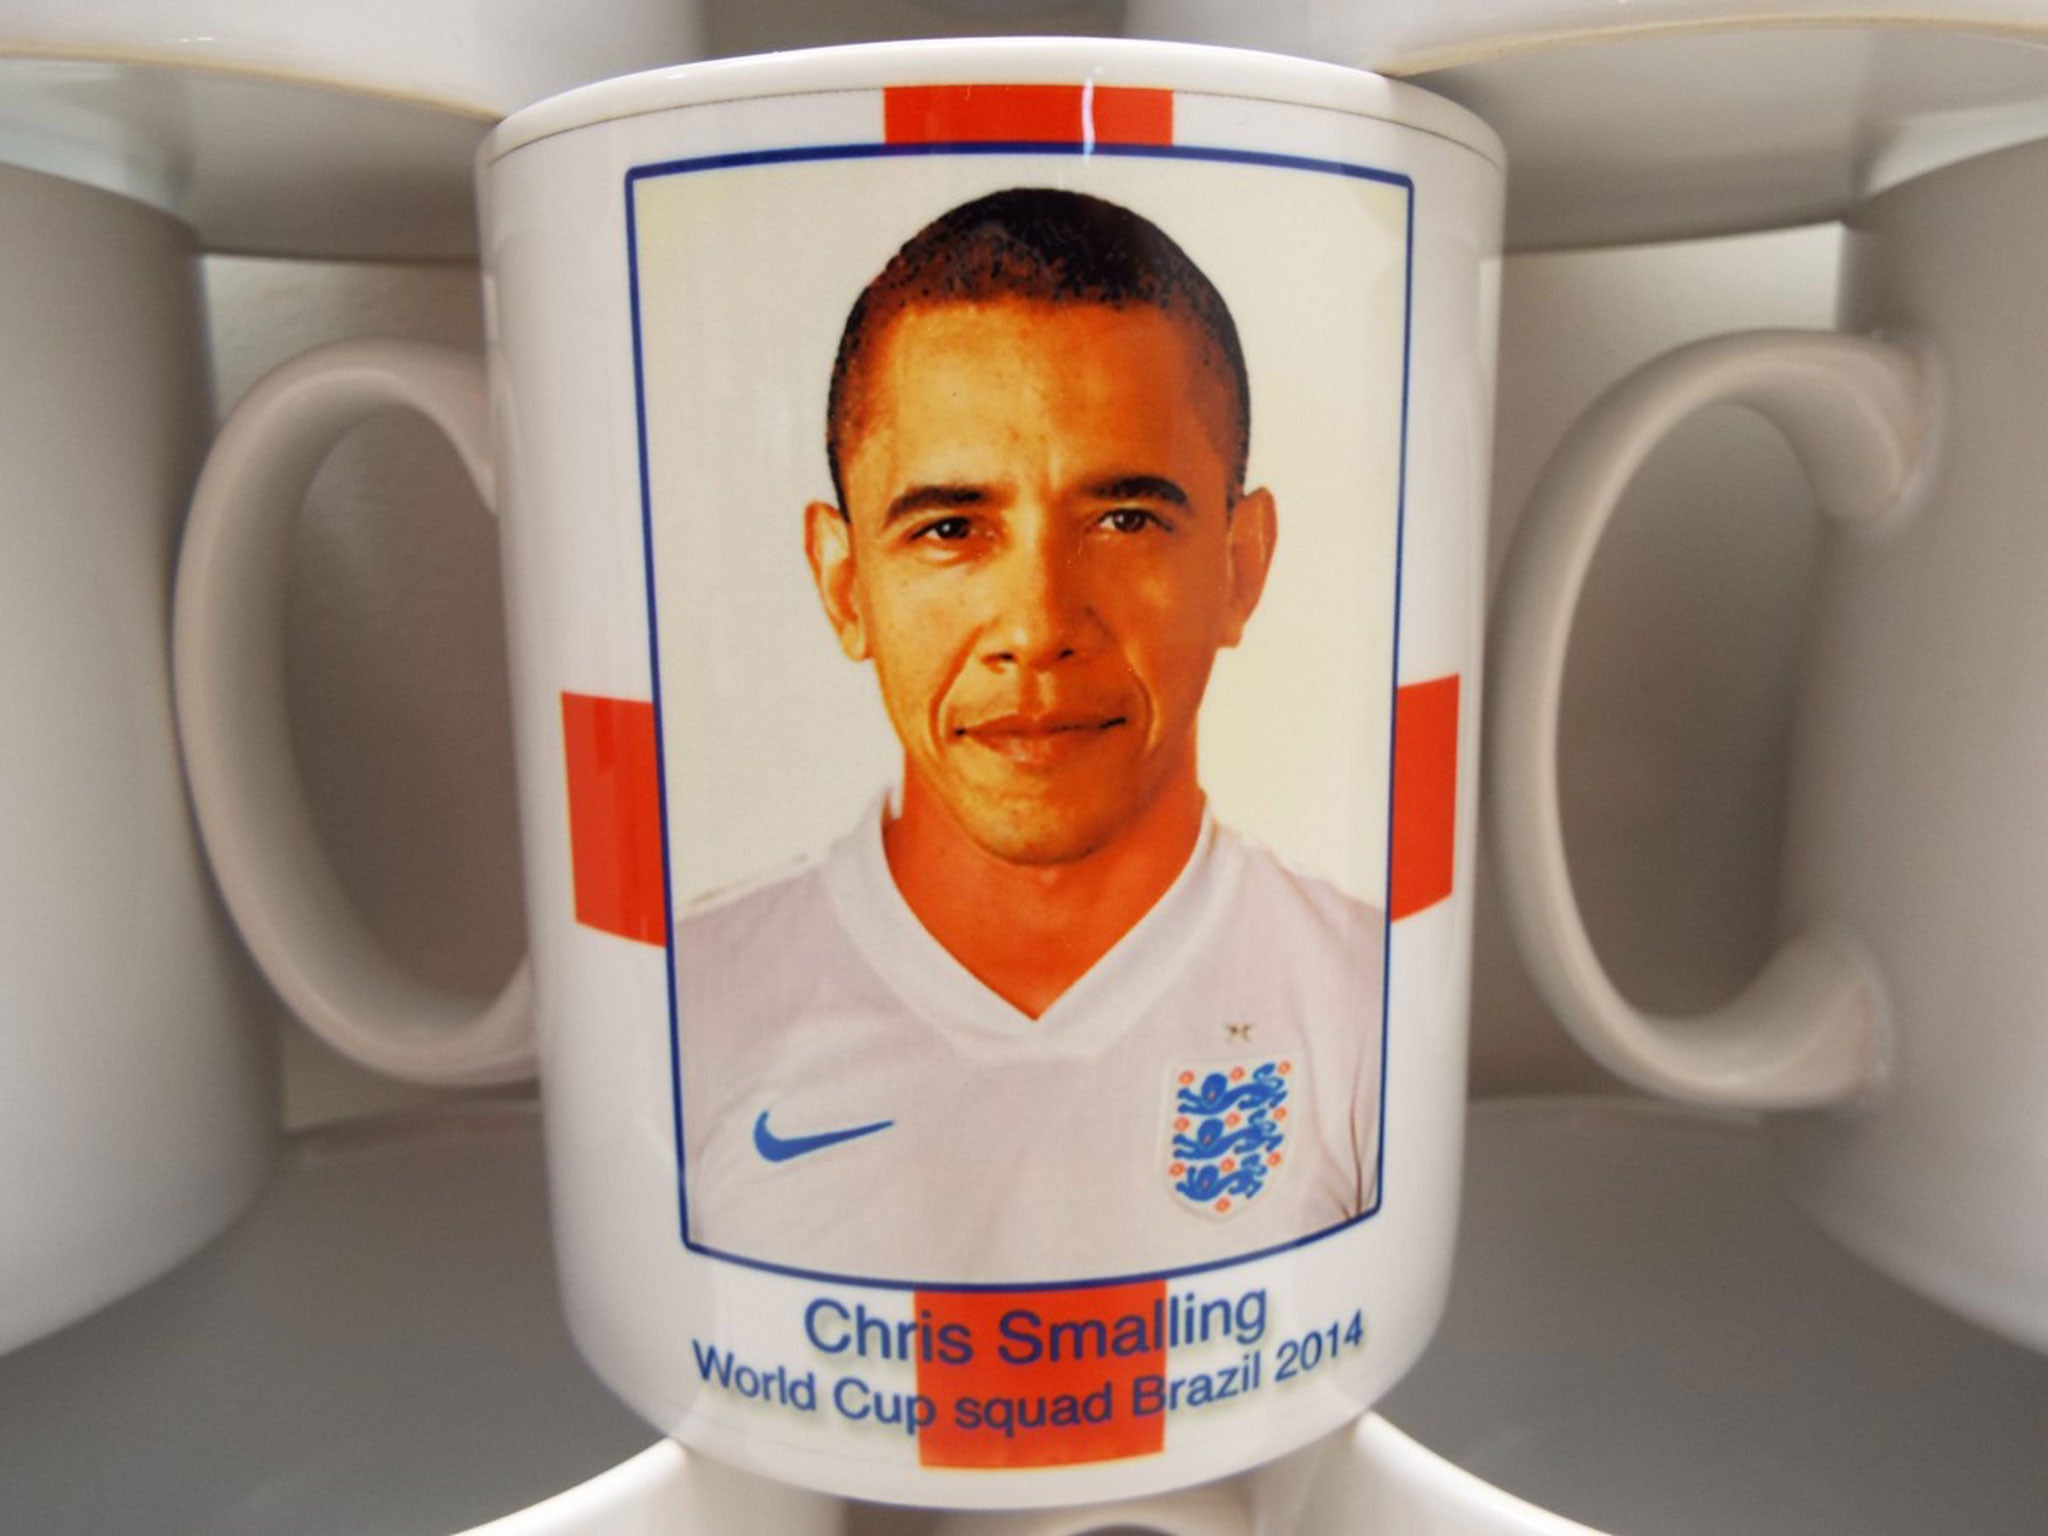 Barack Obama mistaken for England defender Chris Smalling